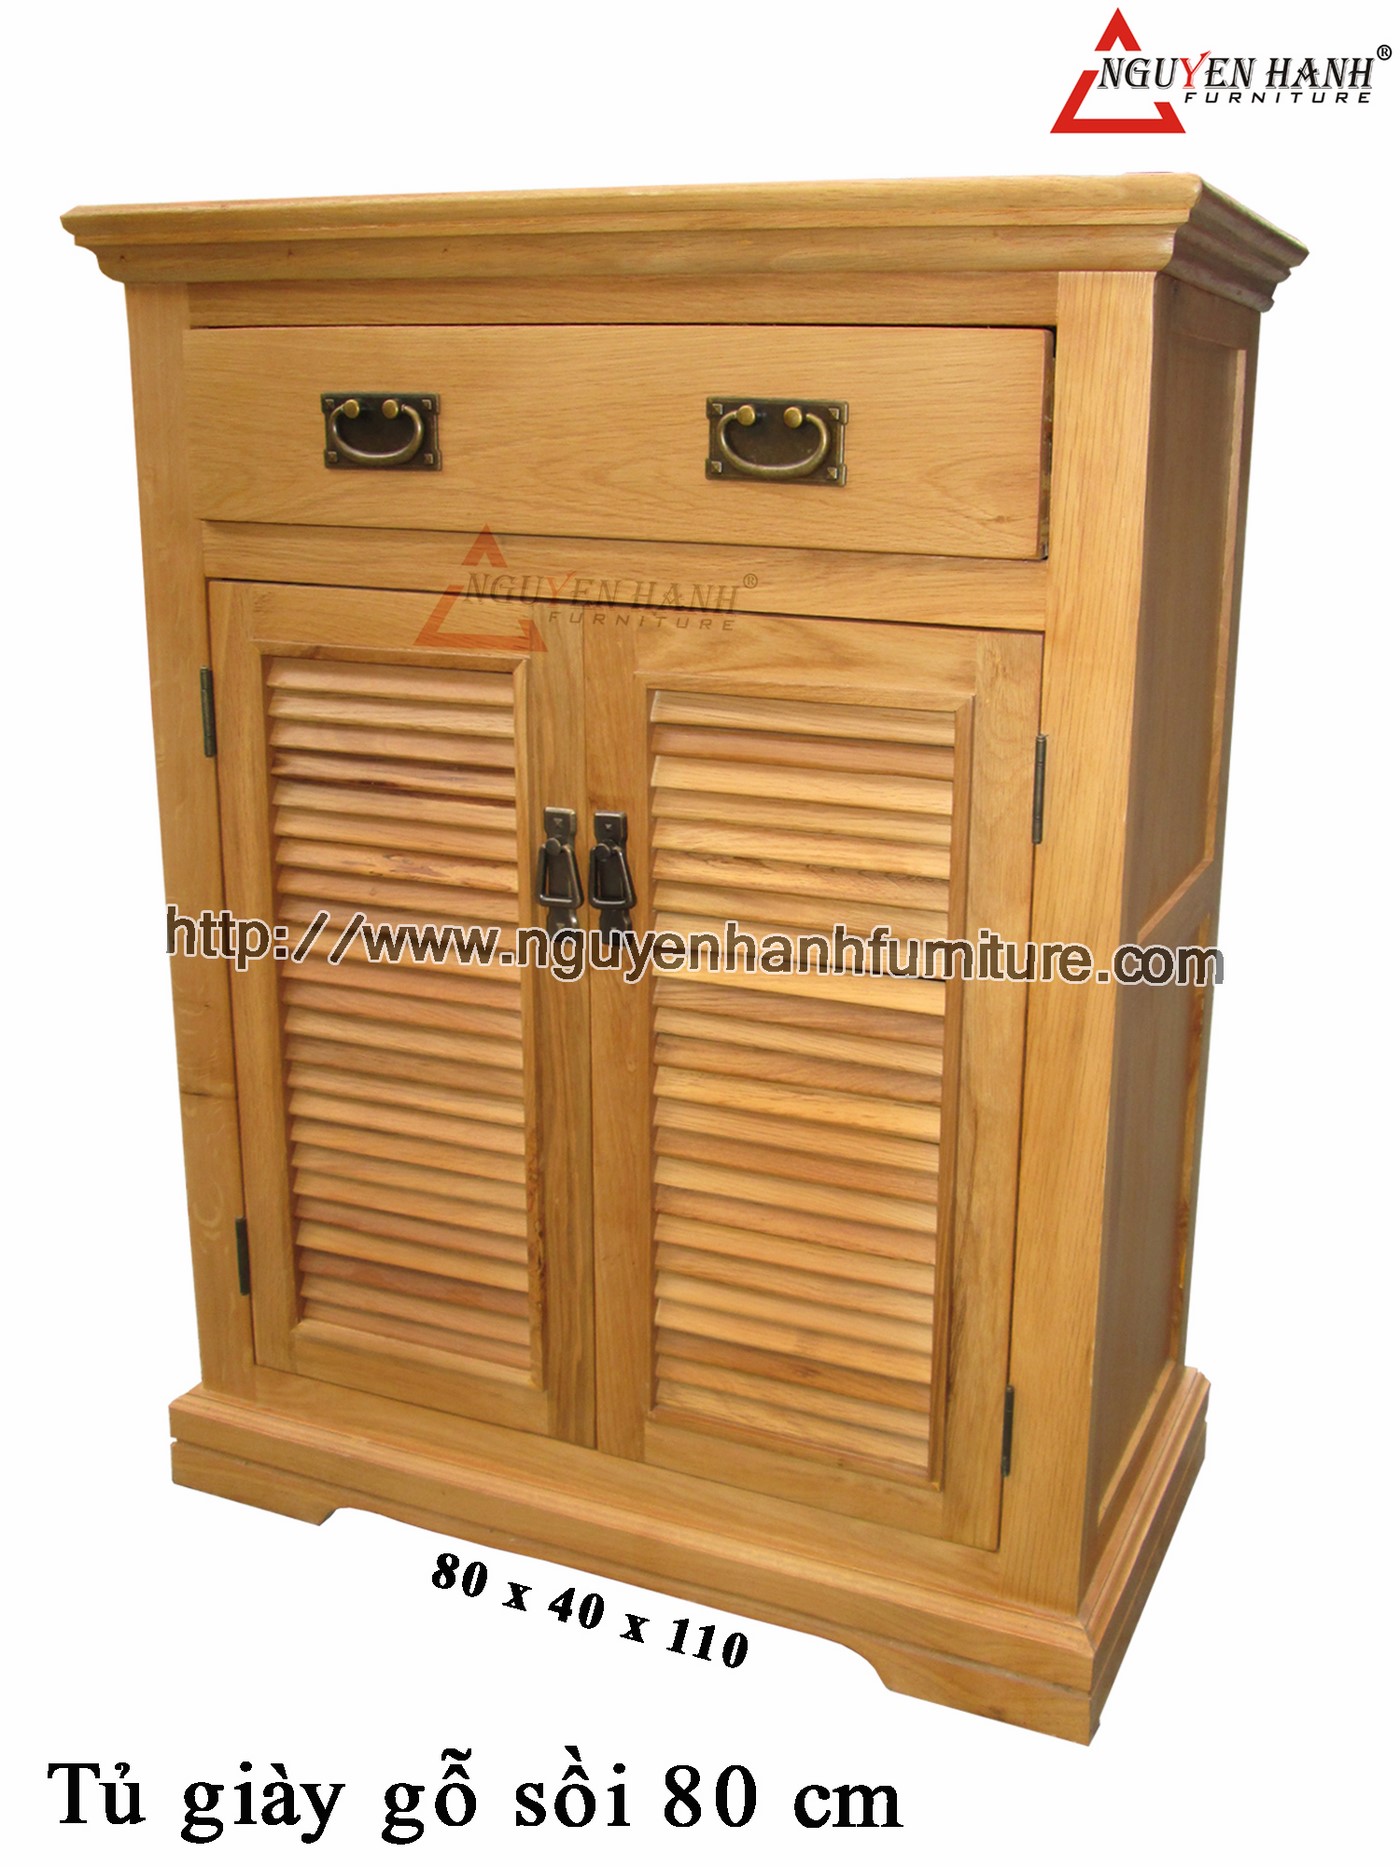 Name product: Oak wood shoes cabinet 80cm - Dimensions: 80 x 40 x 100 (H) - Description: Natural oak wood